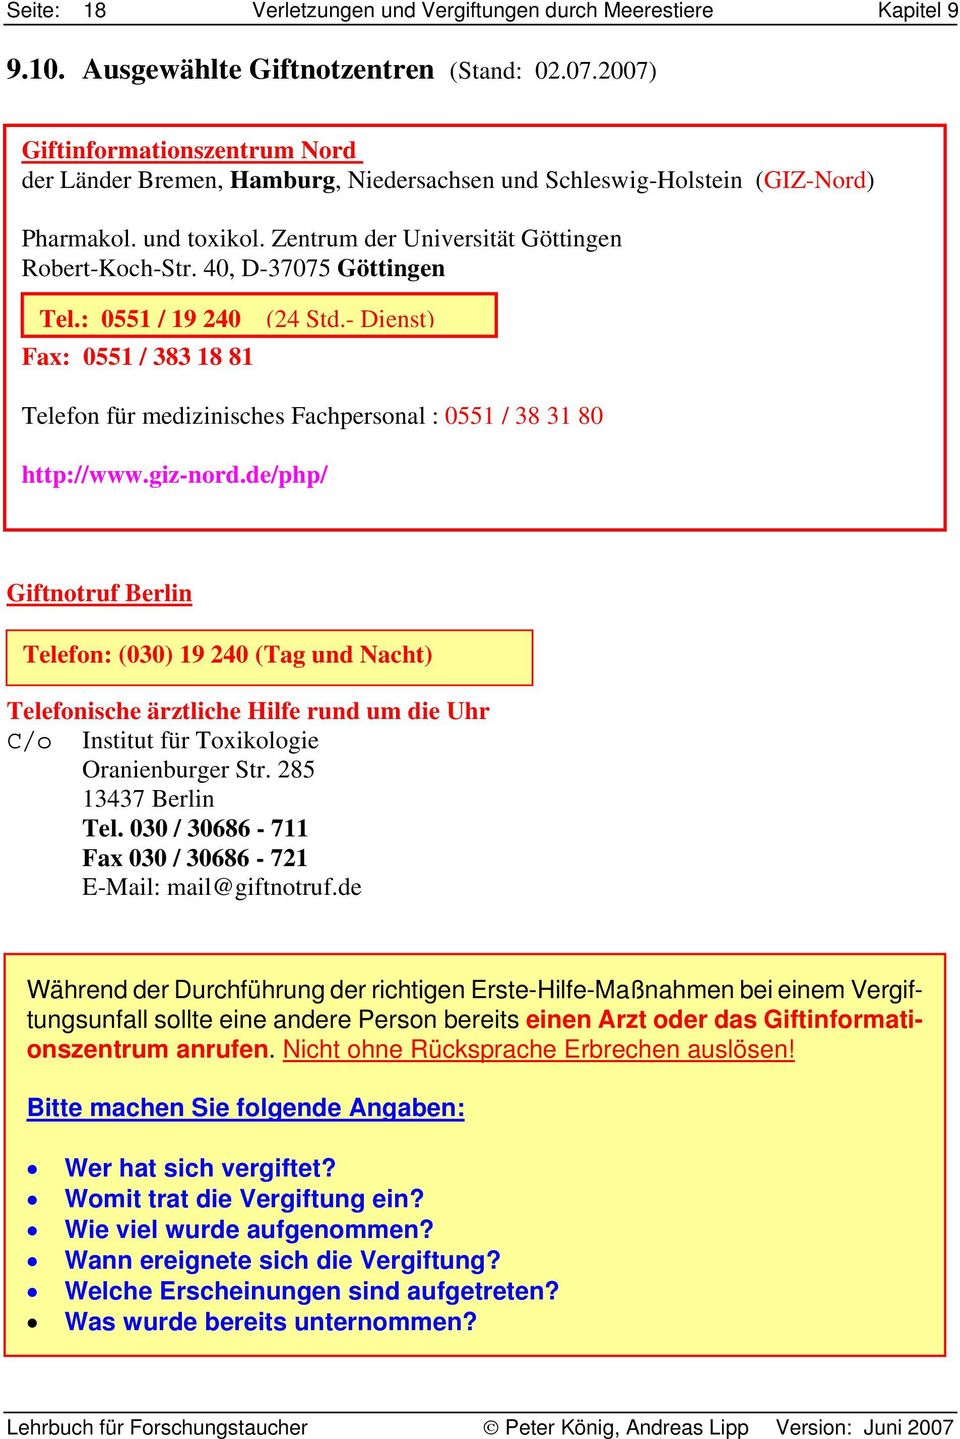 40, D-37075 Göttingen Tel.: 0551 / 19 240 (24 Std.- Dienst) Fax: 0551 / 383 18 81 Telefon für medizinisches Fachpersonal : 0551 / 38 31 80 http://www.giz-nord.